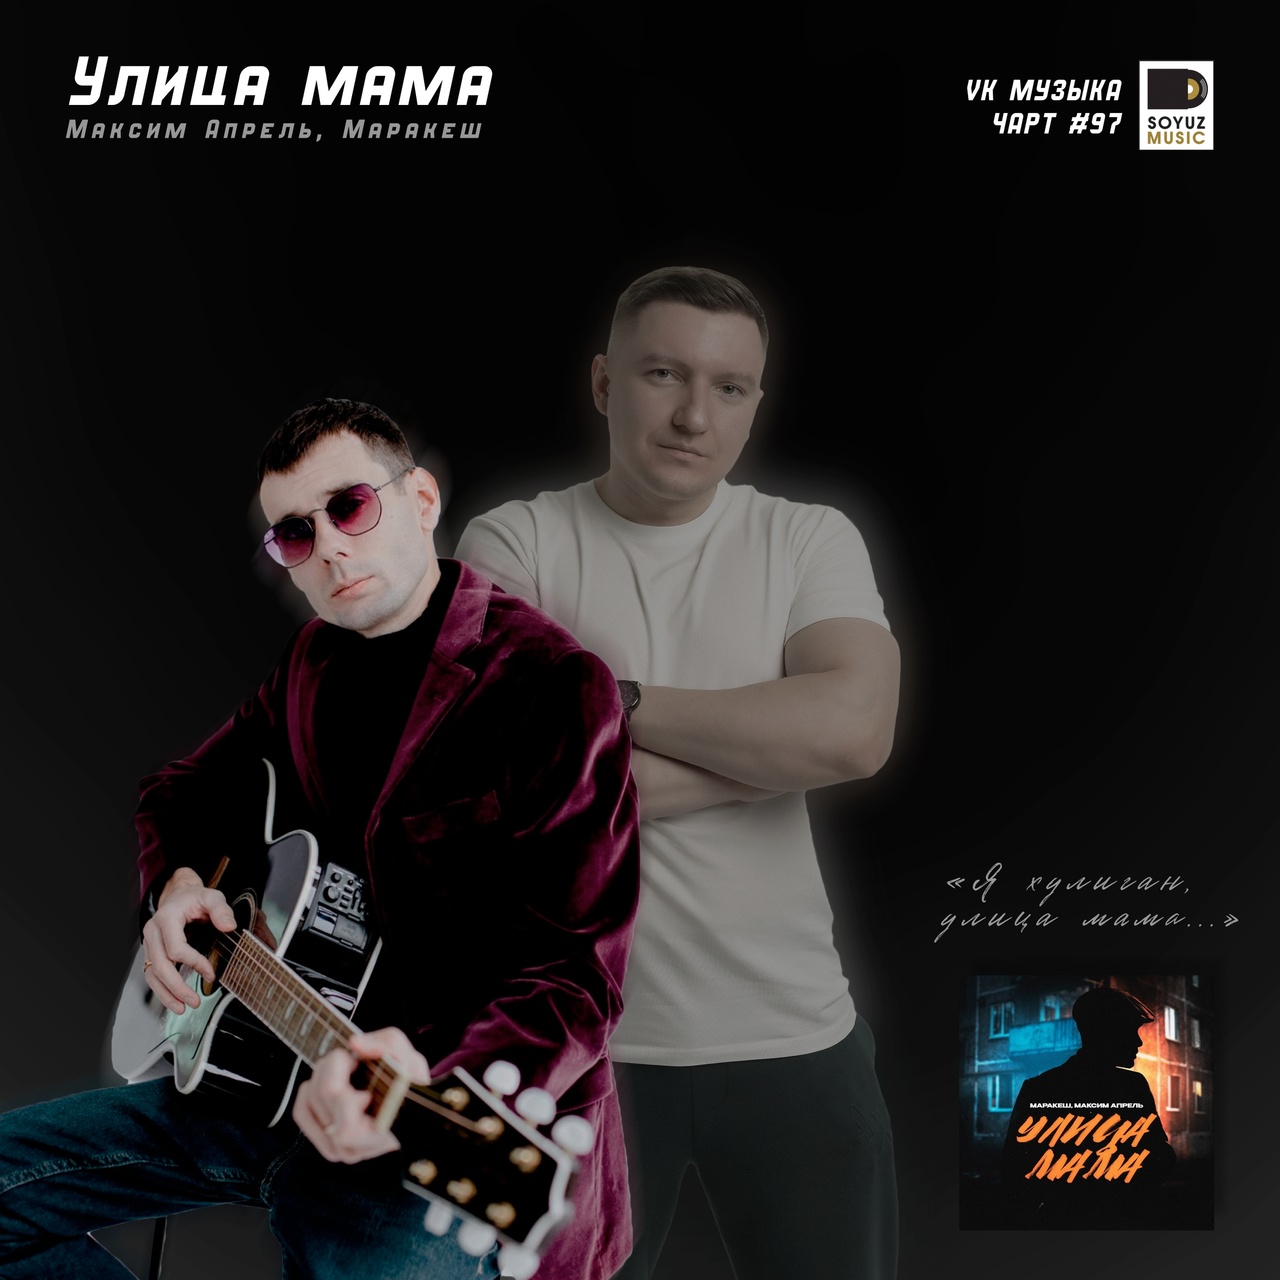 Маракеш и Максим Апрель покоряют чарт ВКонтакте с треком «Улица мама», залетая в топ-100 громких хитов недели.